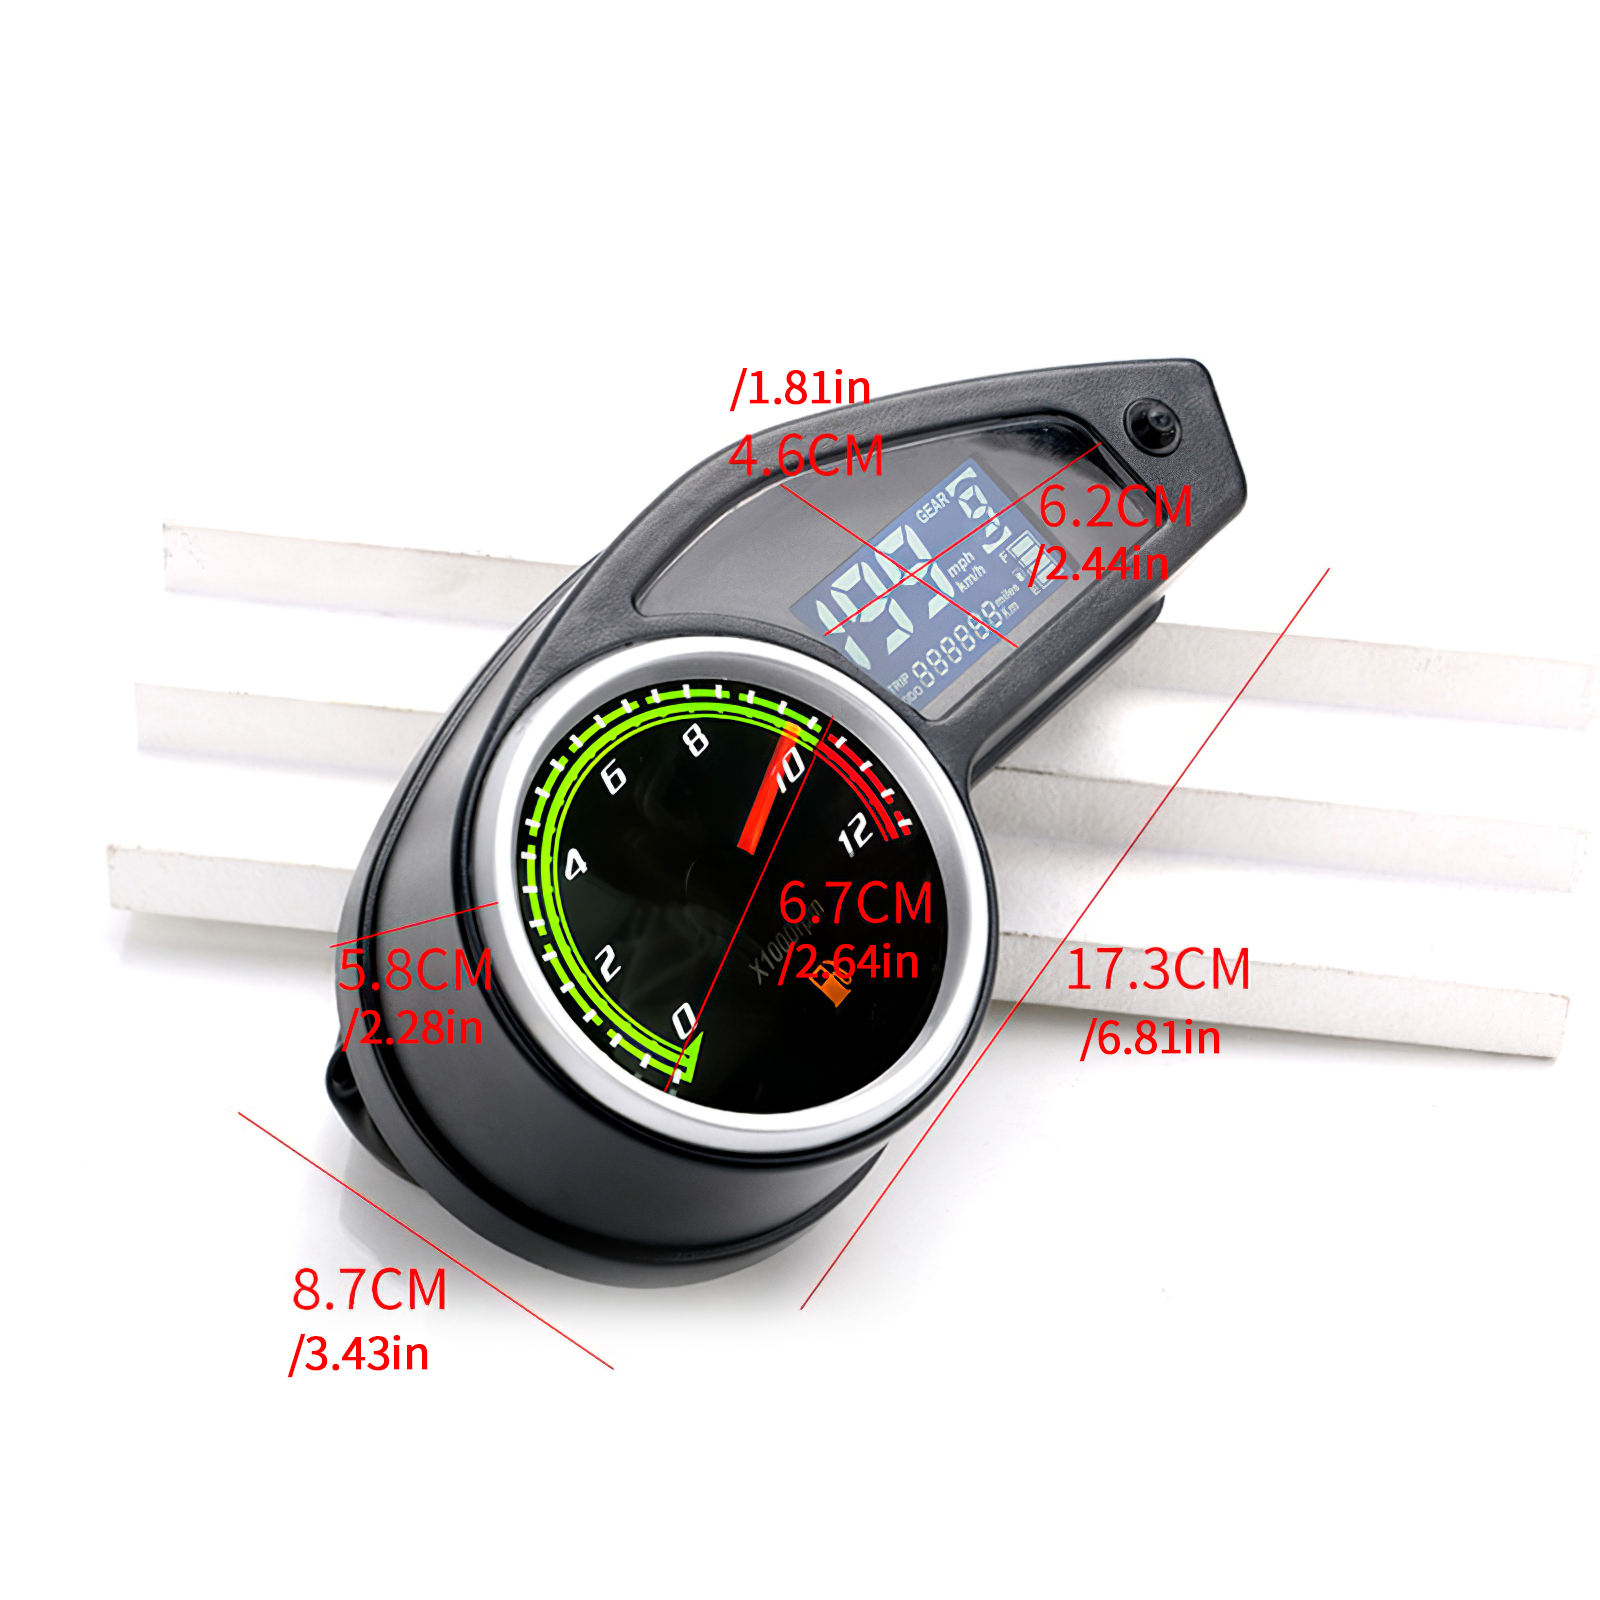 Motorcycle Digital Speedometer, Motorcycle Digital Speedometer Black Motorbike Tachometer LCD odometer Gauge Universal Ometer with Sensor fit for Motorcycle Repair Refit